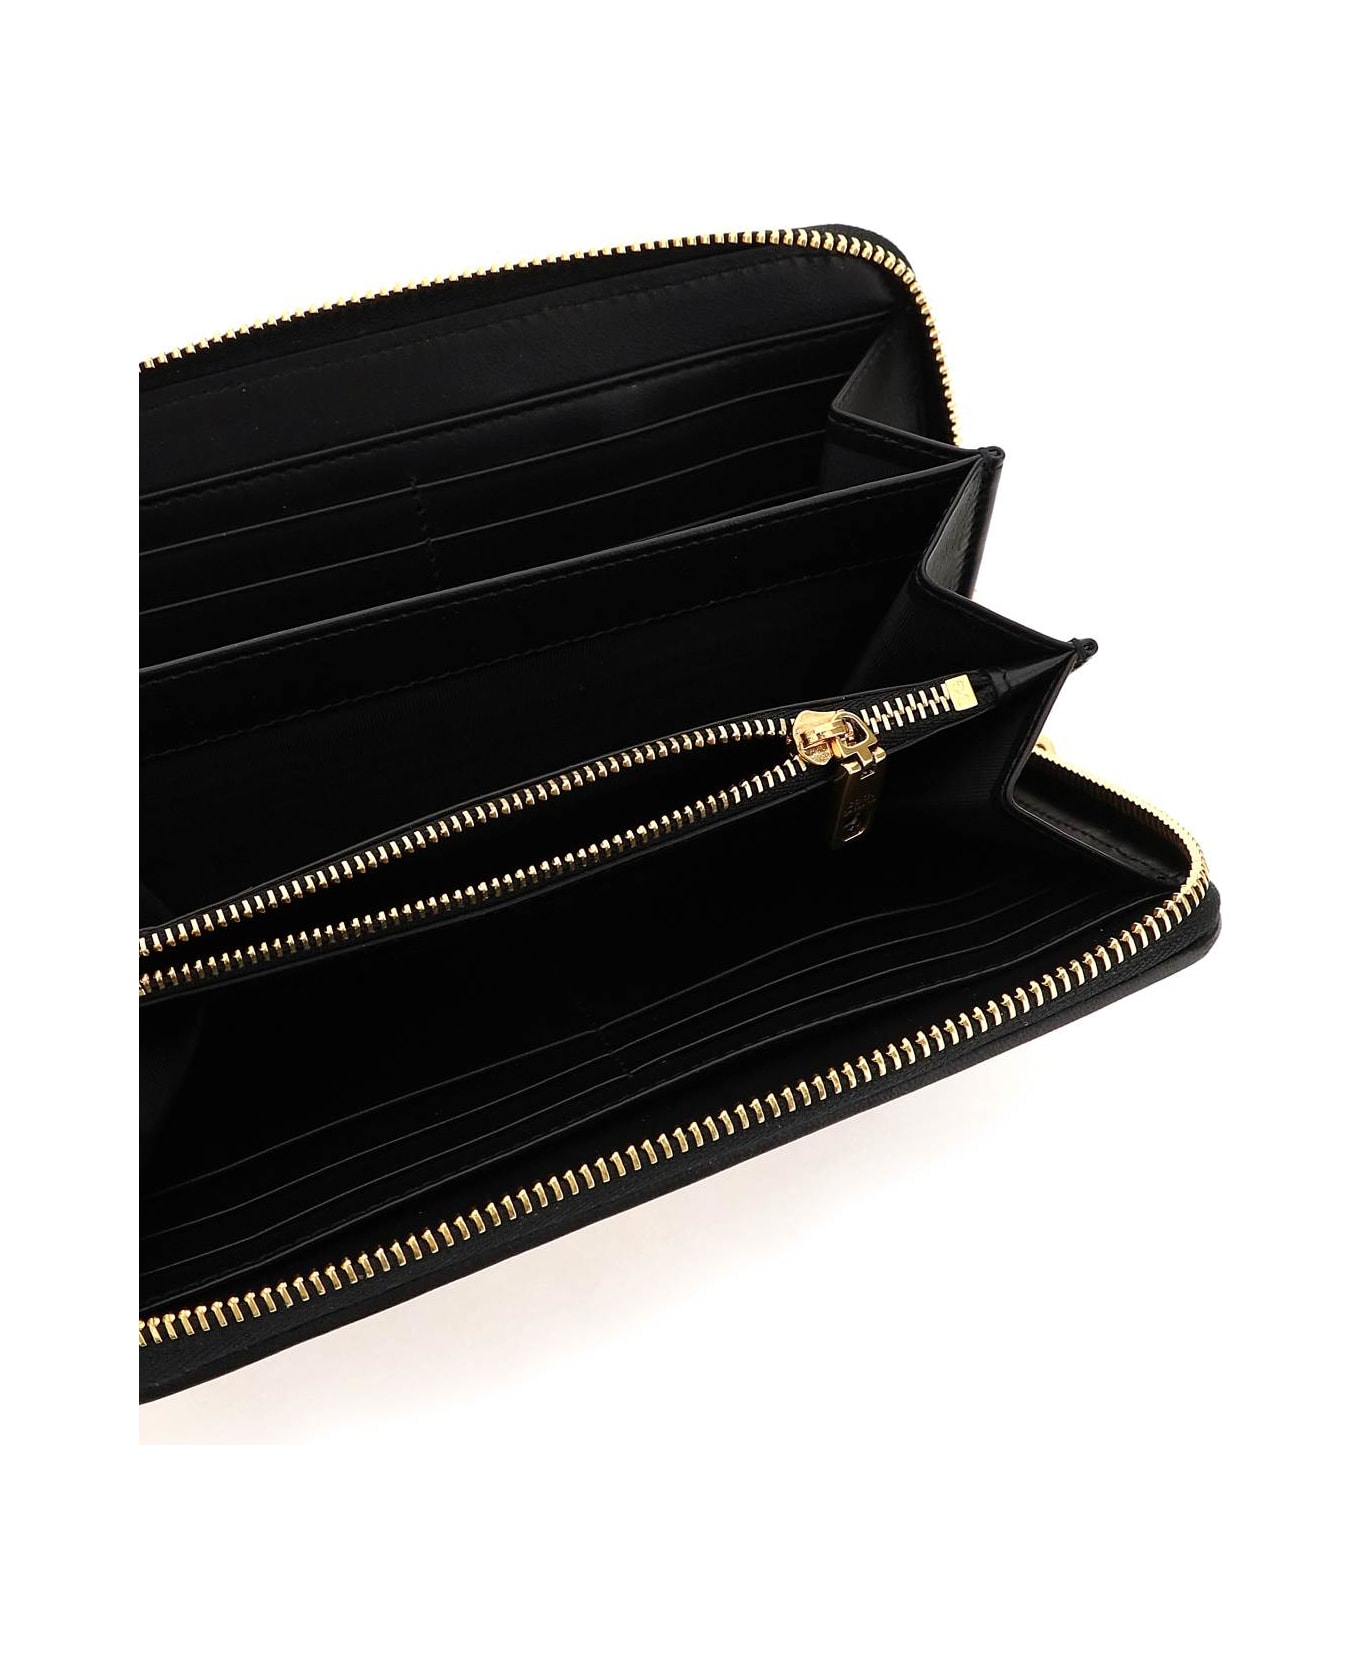 Dolce & Gabbana Devotion Zip-around Wallet - Black